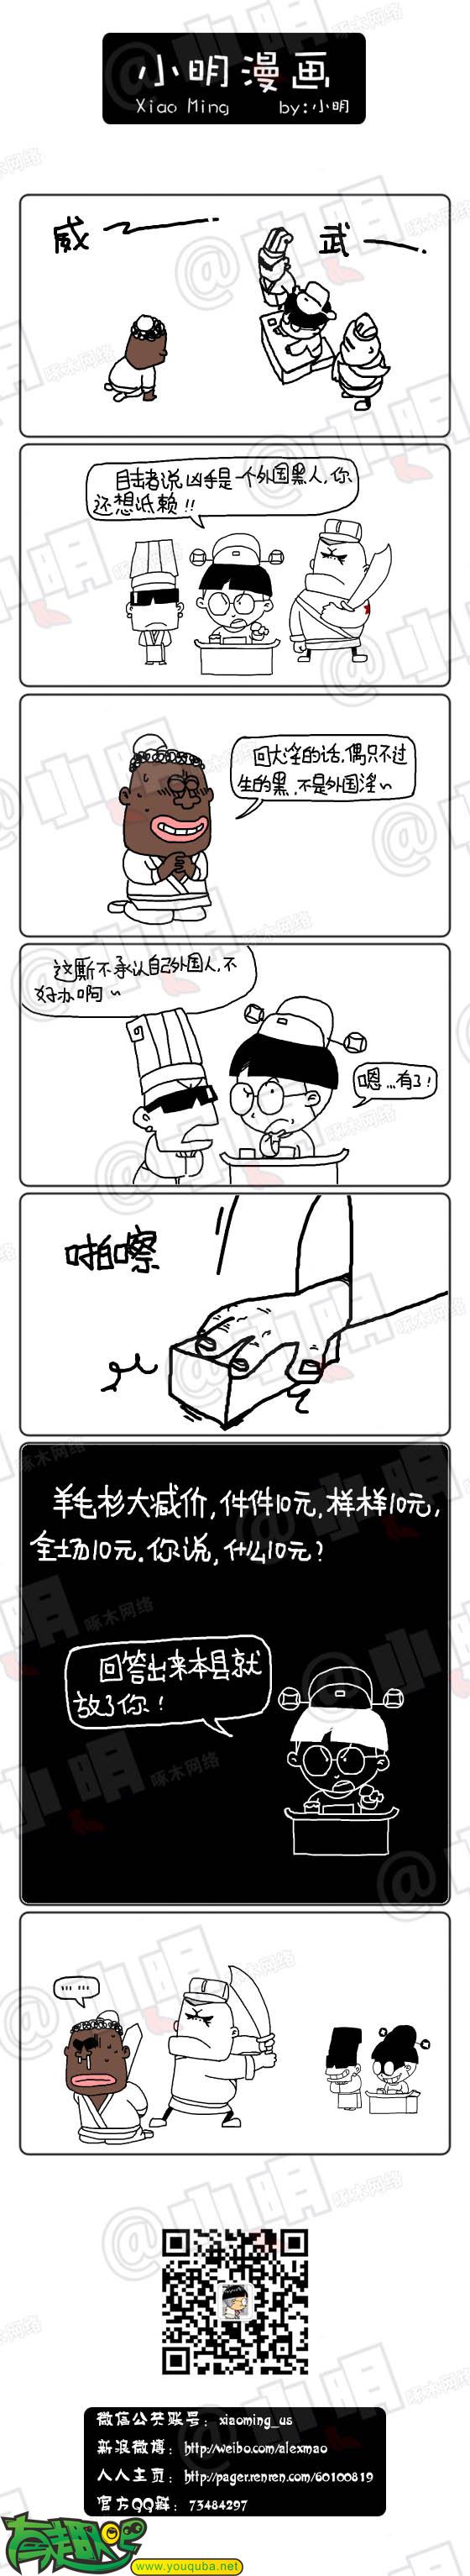 小明系列漫画:统统10元